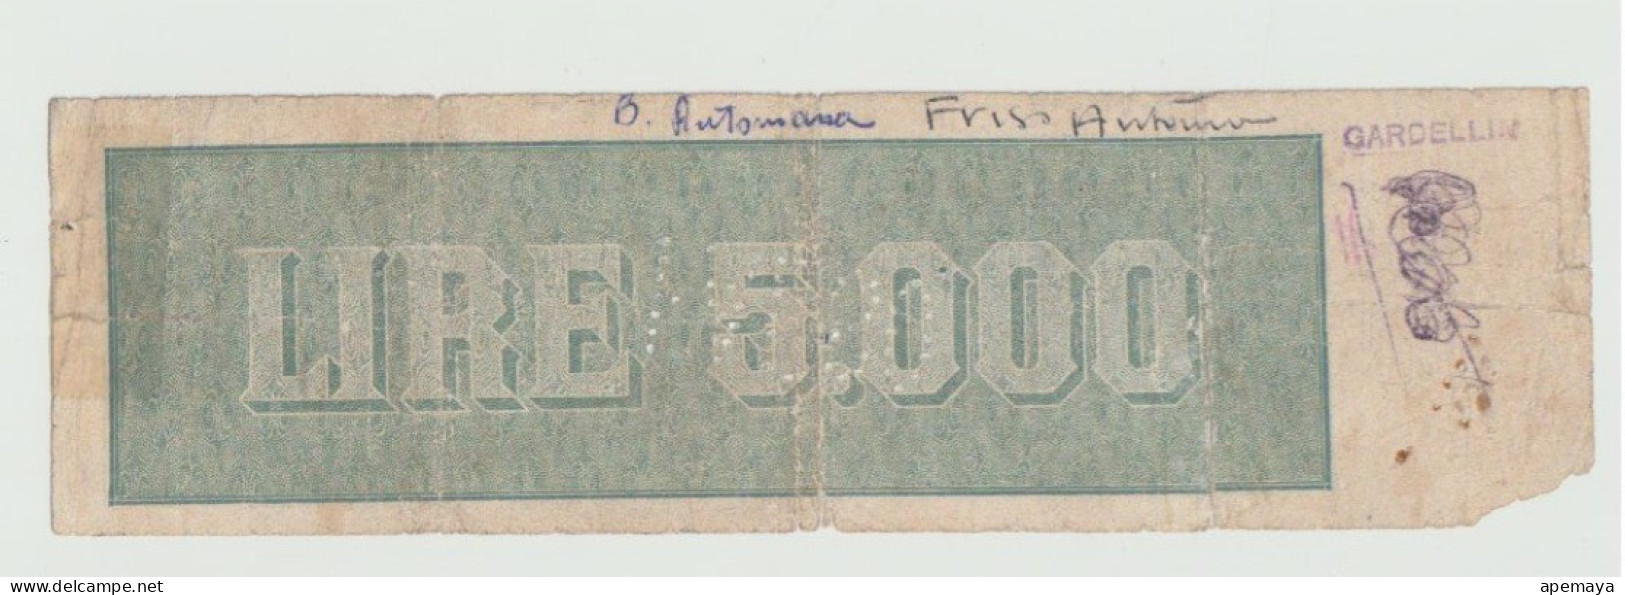 FALSO D'EPOCA. 5000 LIRE REPUBBLICA. 22/11/1947. DATA DI FANTASIA. - [ 8] Fakes & Specimens